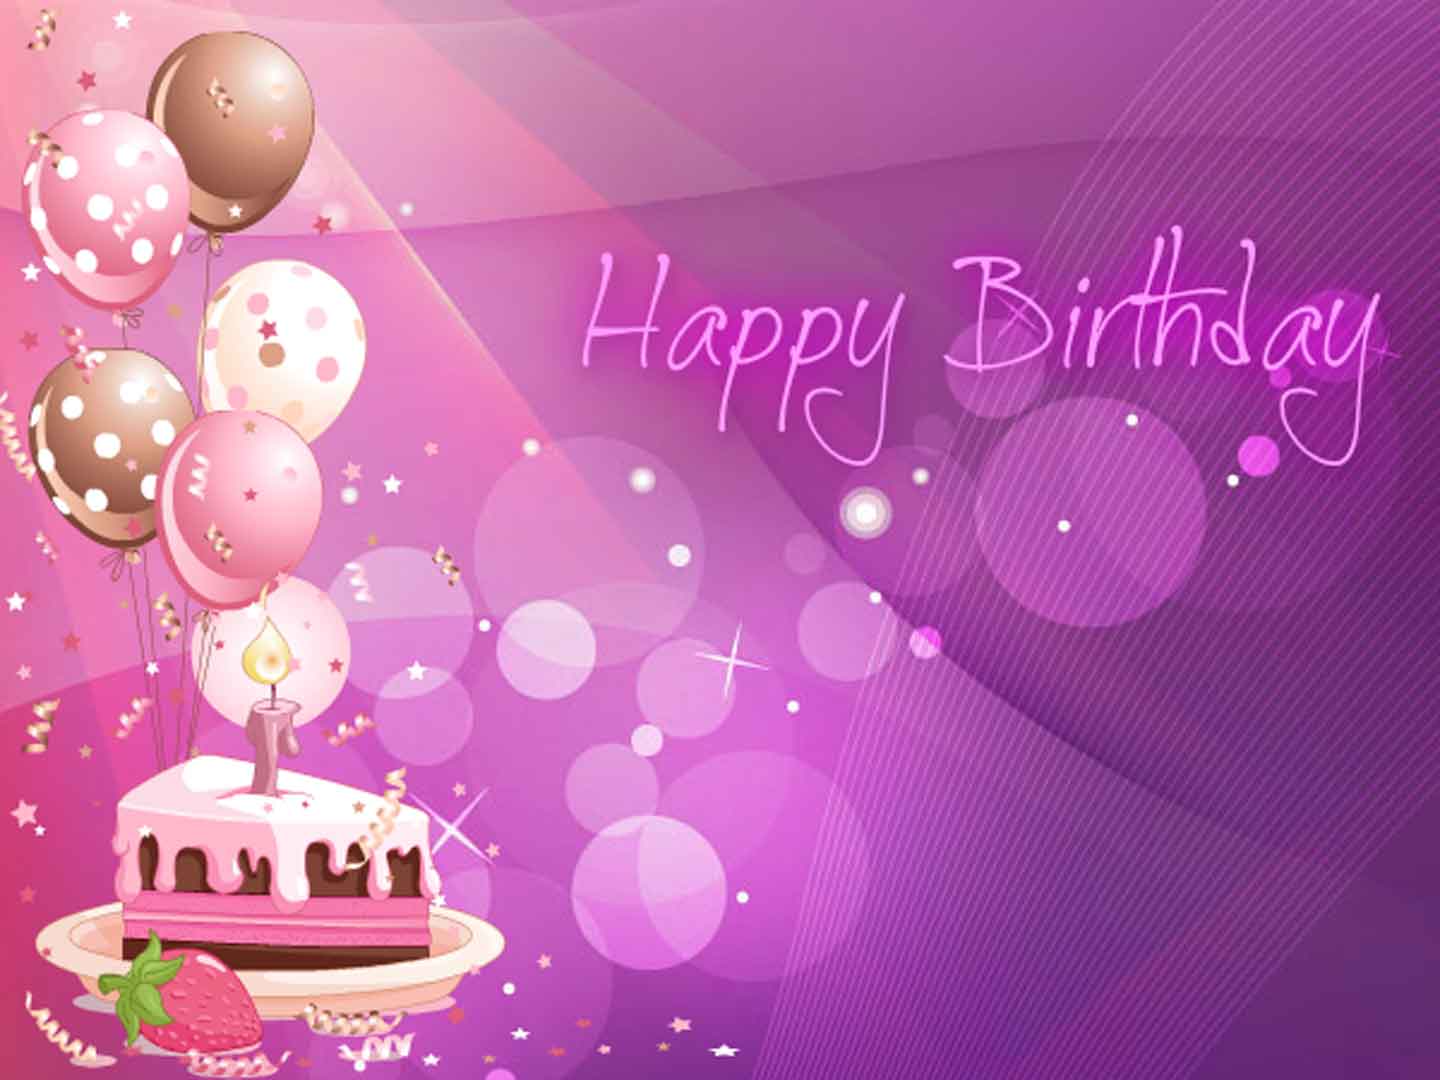 Birthday Cake Wallpapers download - PixelsTalk.Net